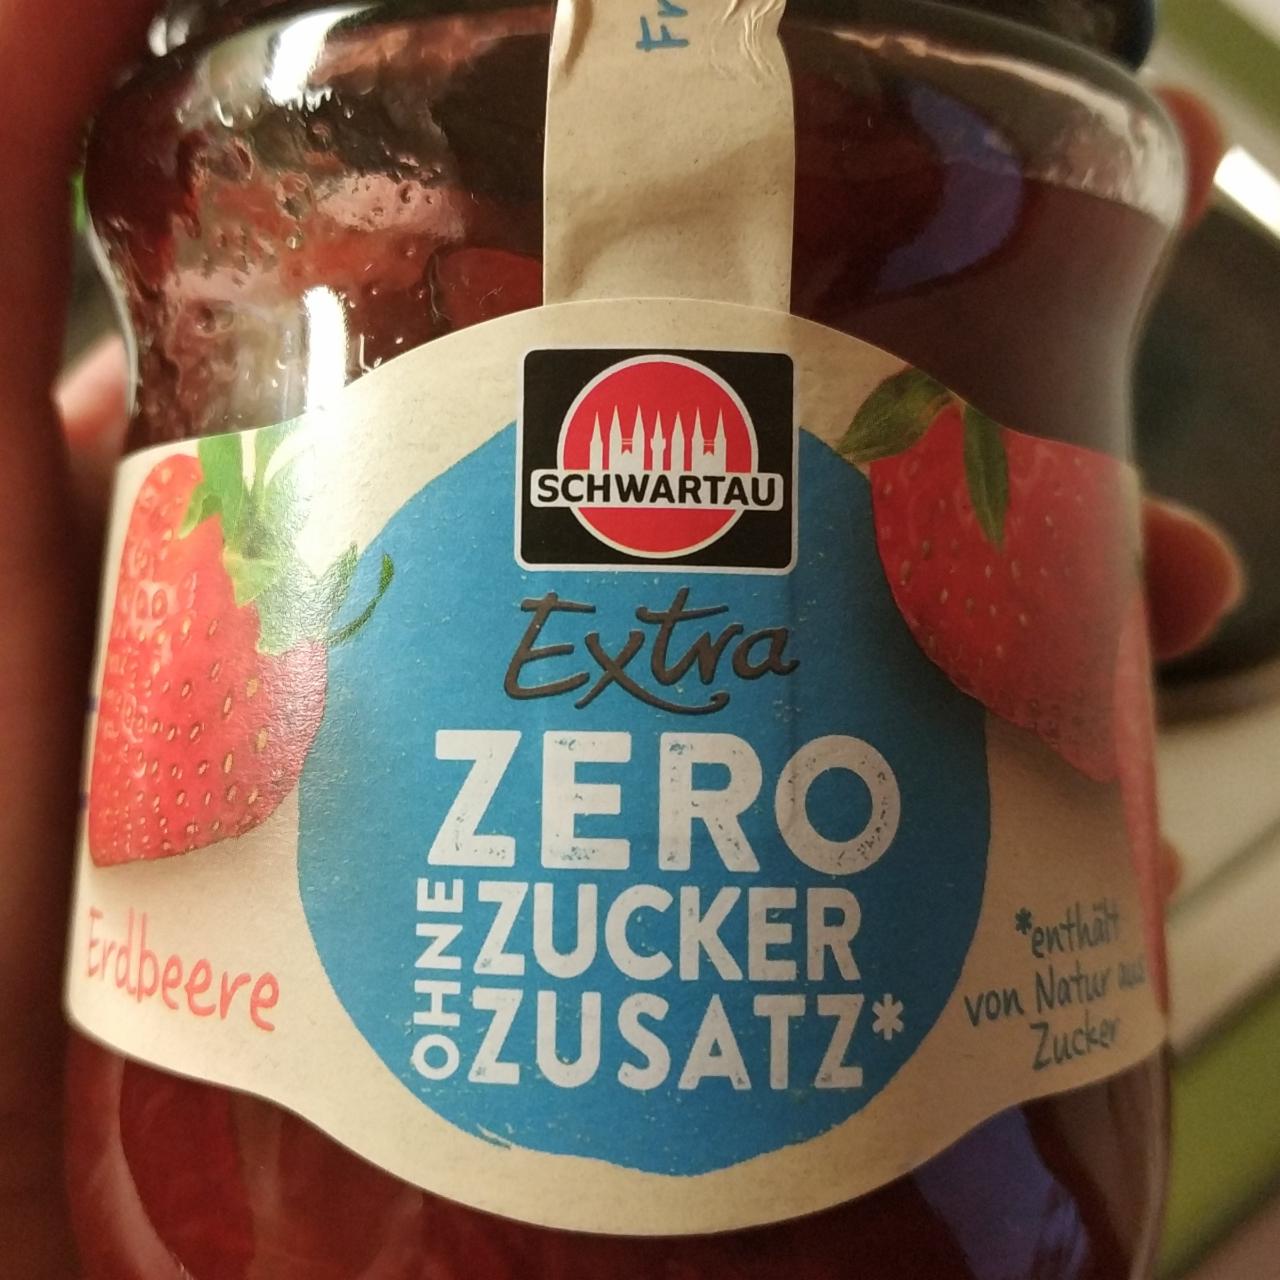 Fotografie - Extra zero ohne zucker zusatz erdbeere Schwartau